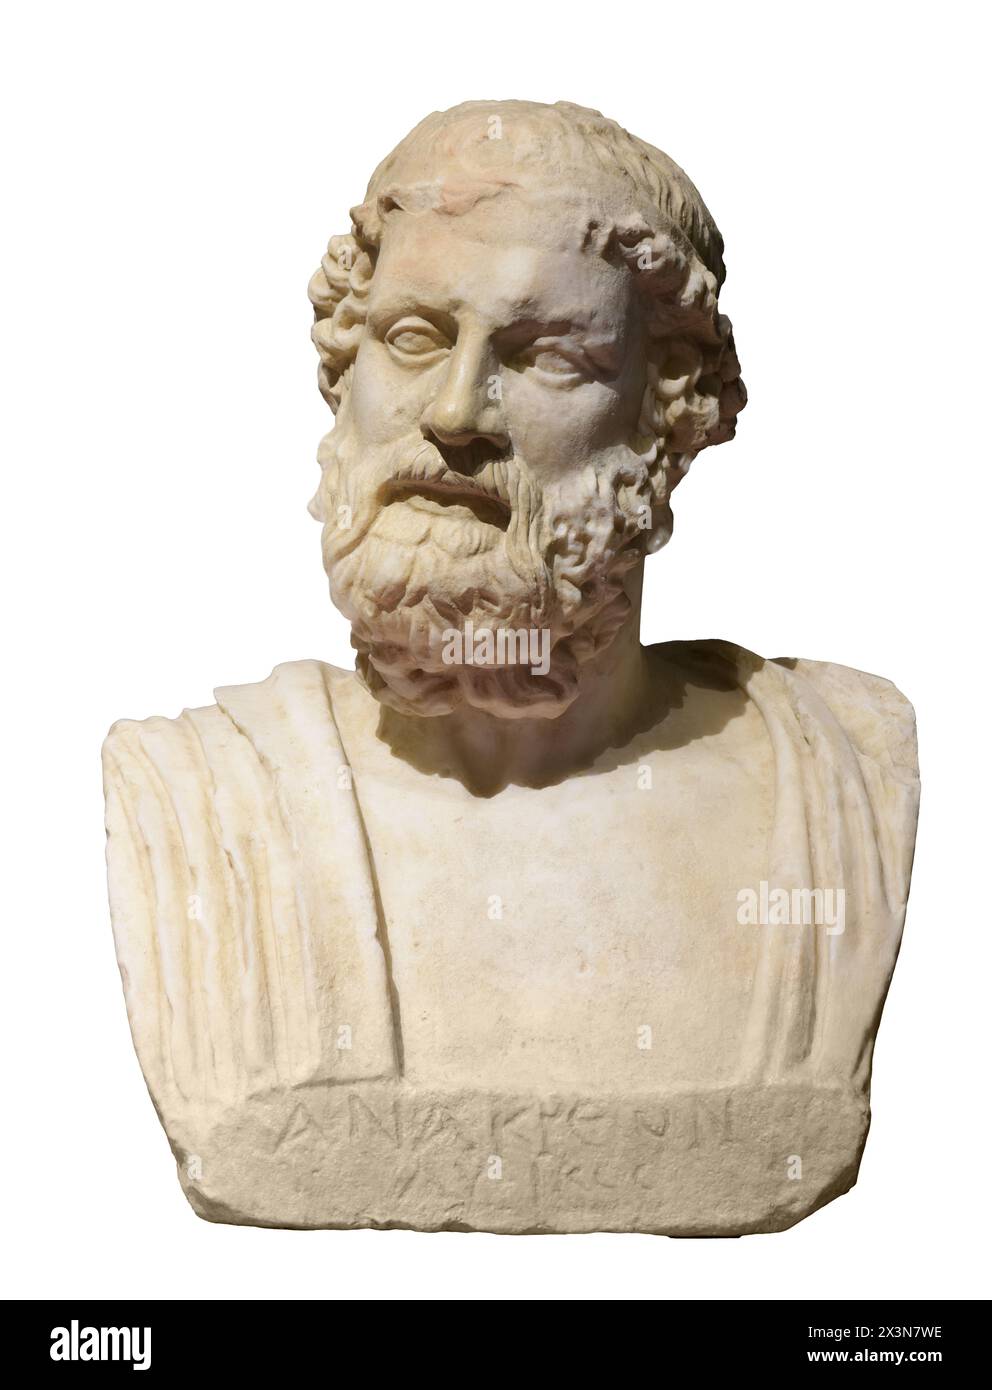 Herm von Anacreon von Phidias oder Pheidias - altgriechischer Bildhauer, Maler und Architekt Stockfoto